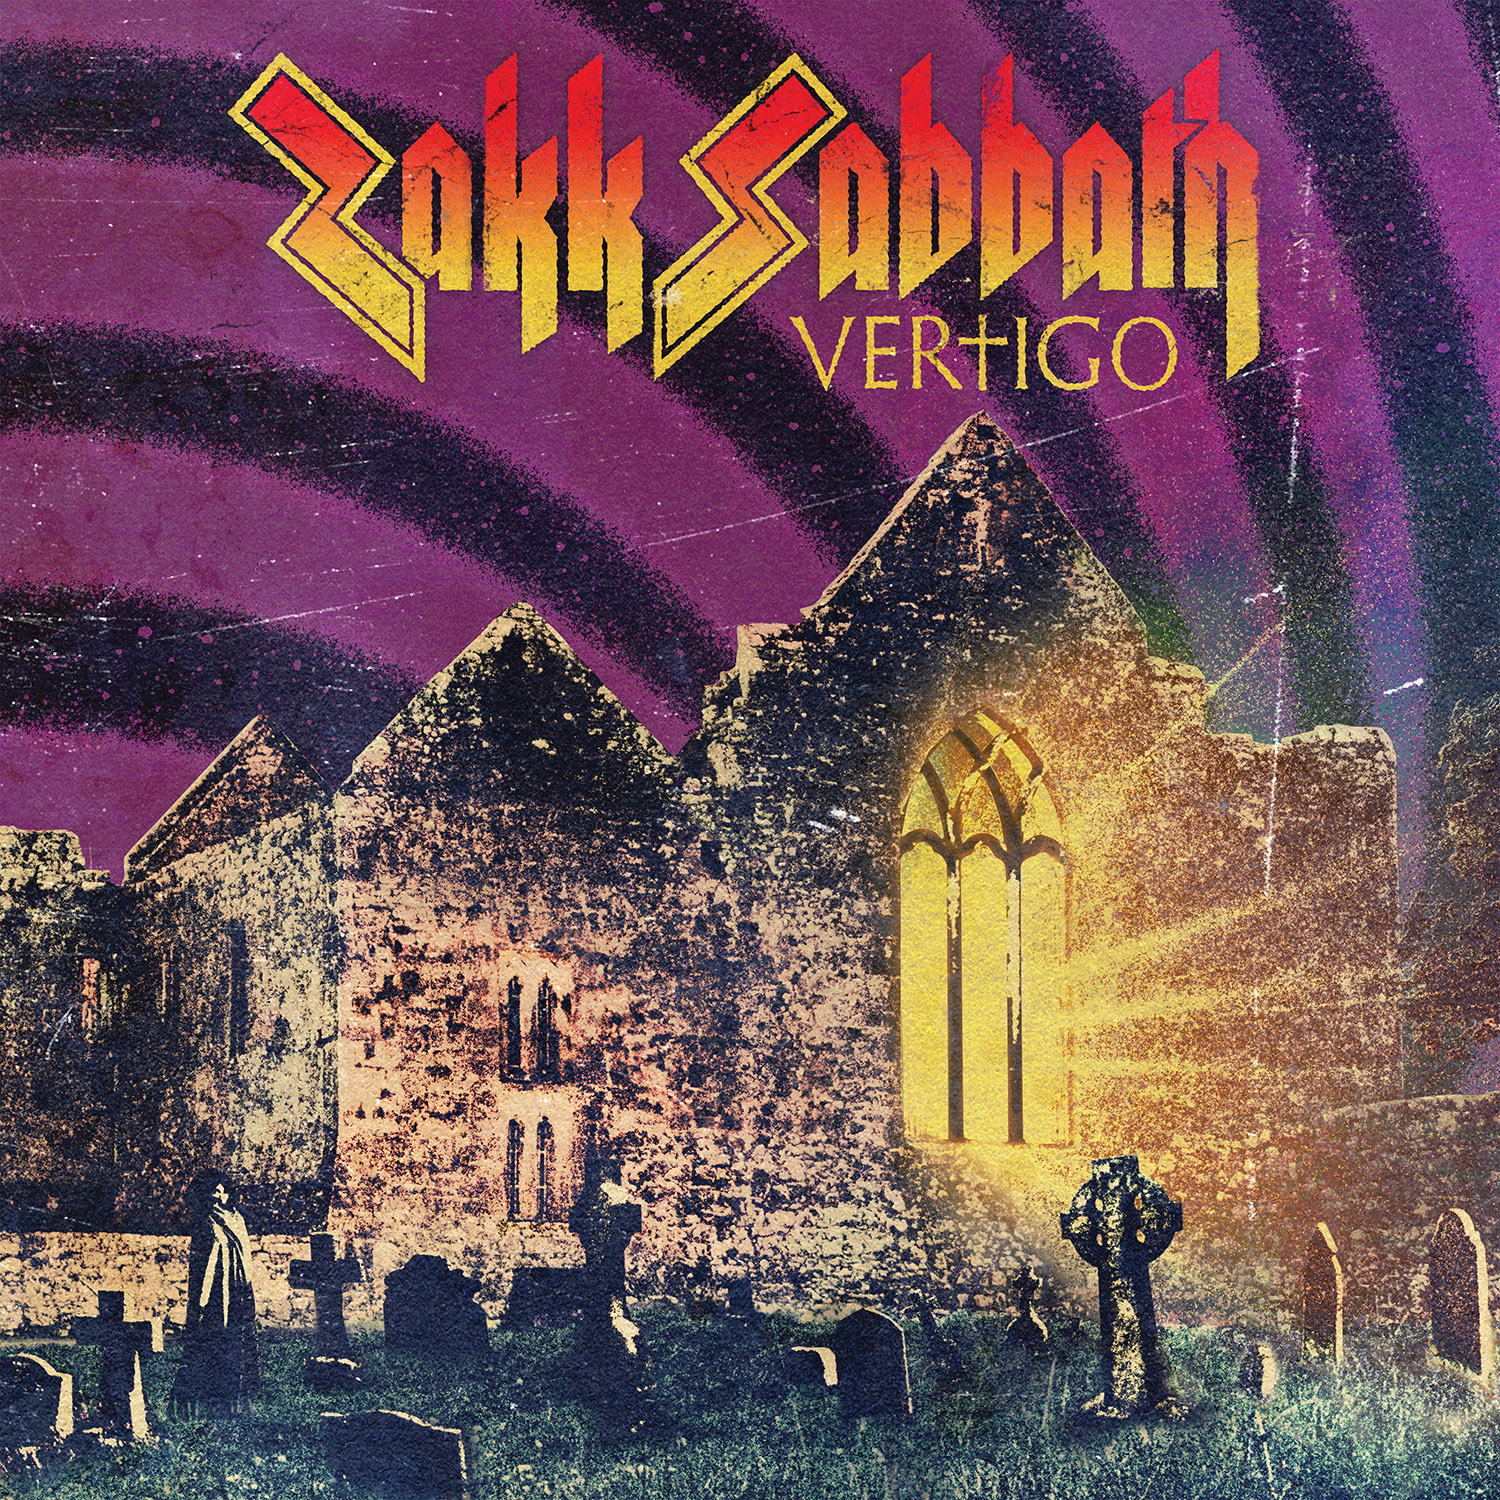 black sabbath albums